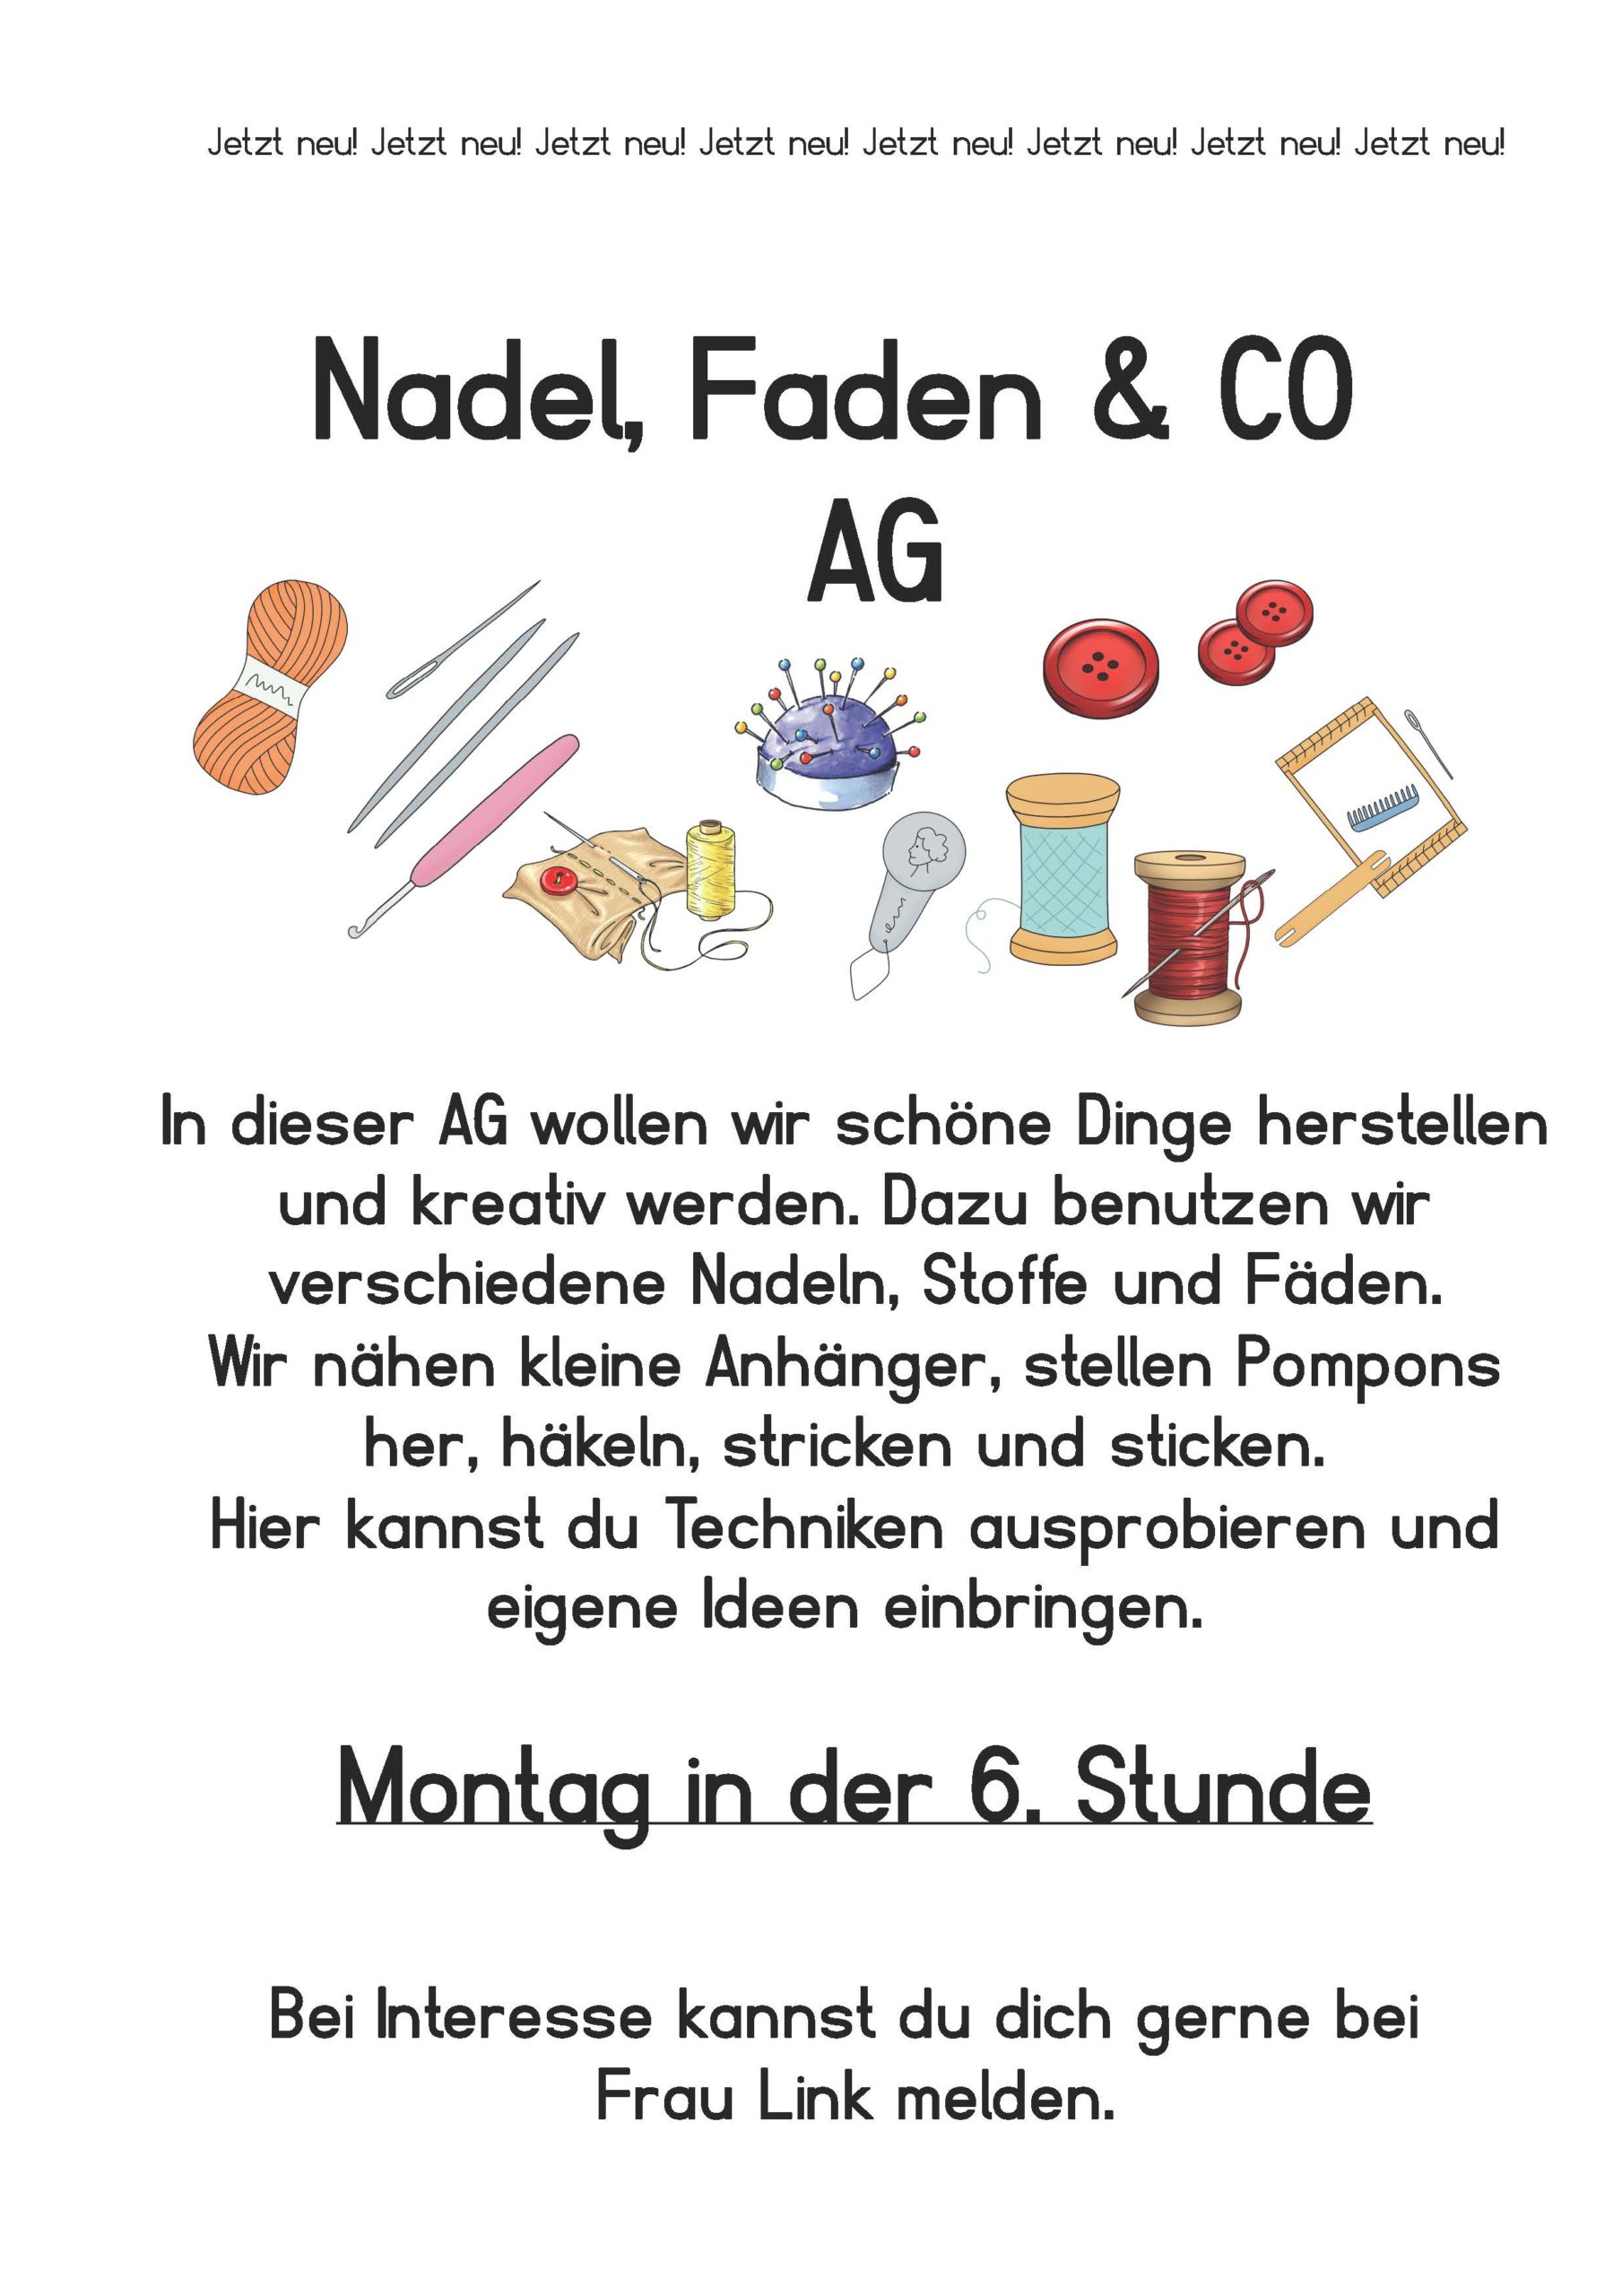 Nadel, Faden & Co-AG – Rehbergschule Herborn